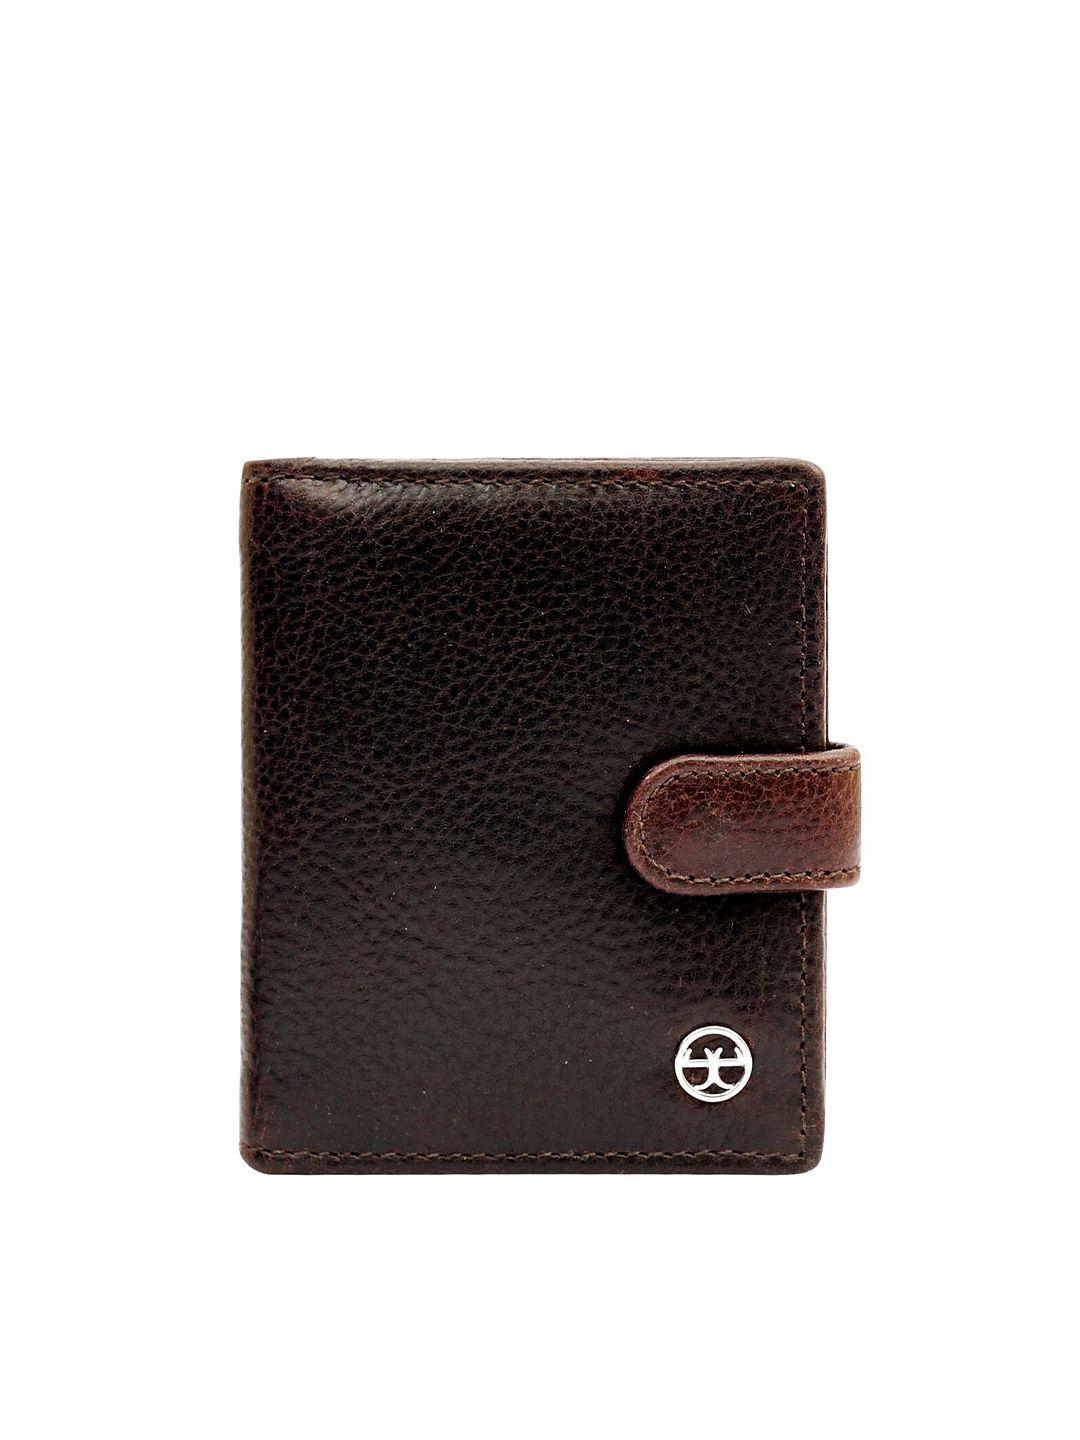 eske men leather card holder